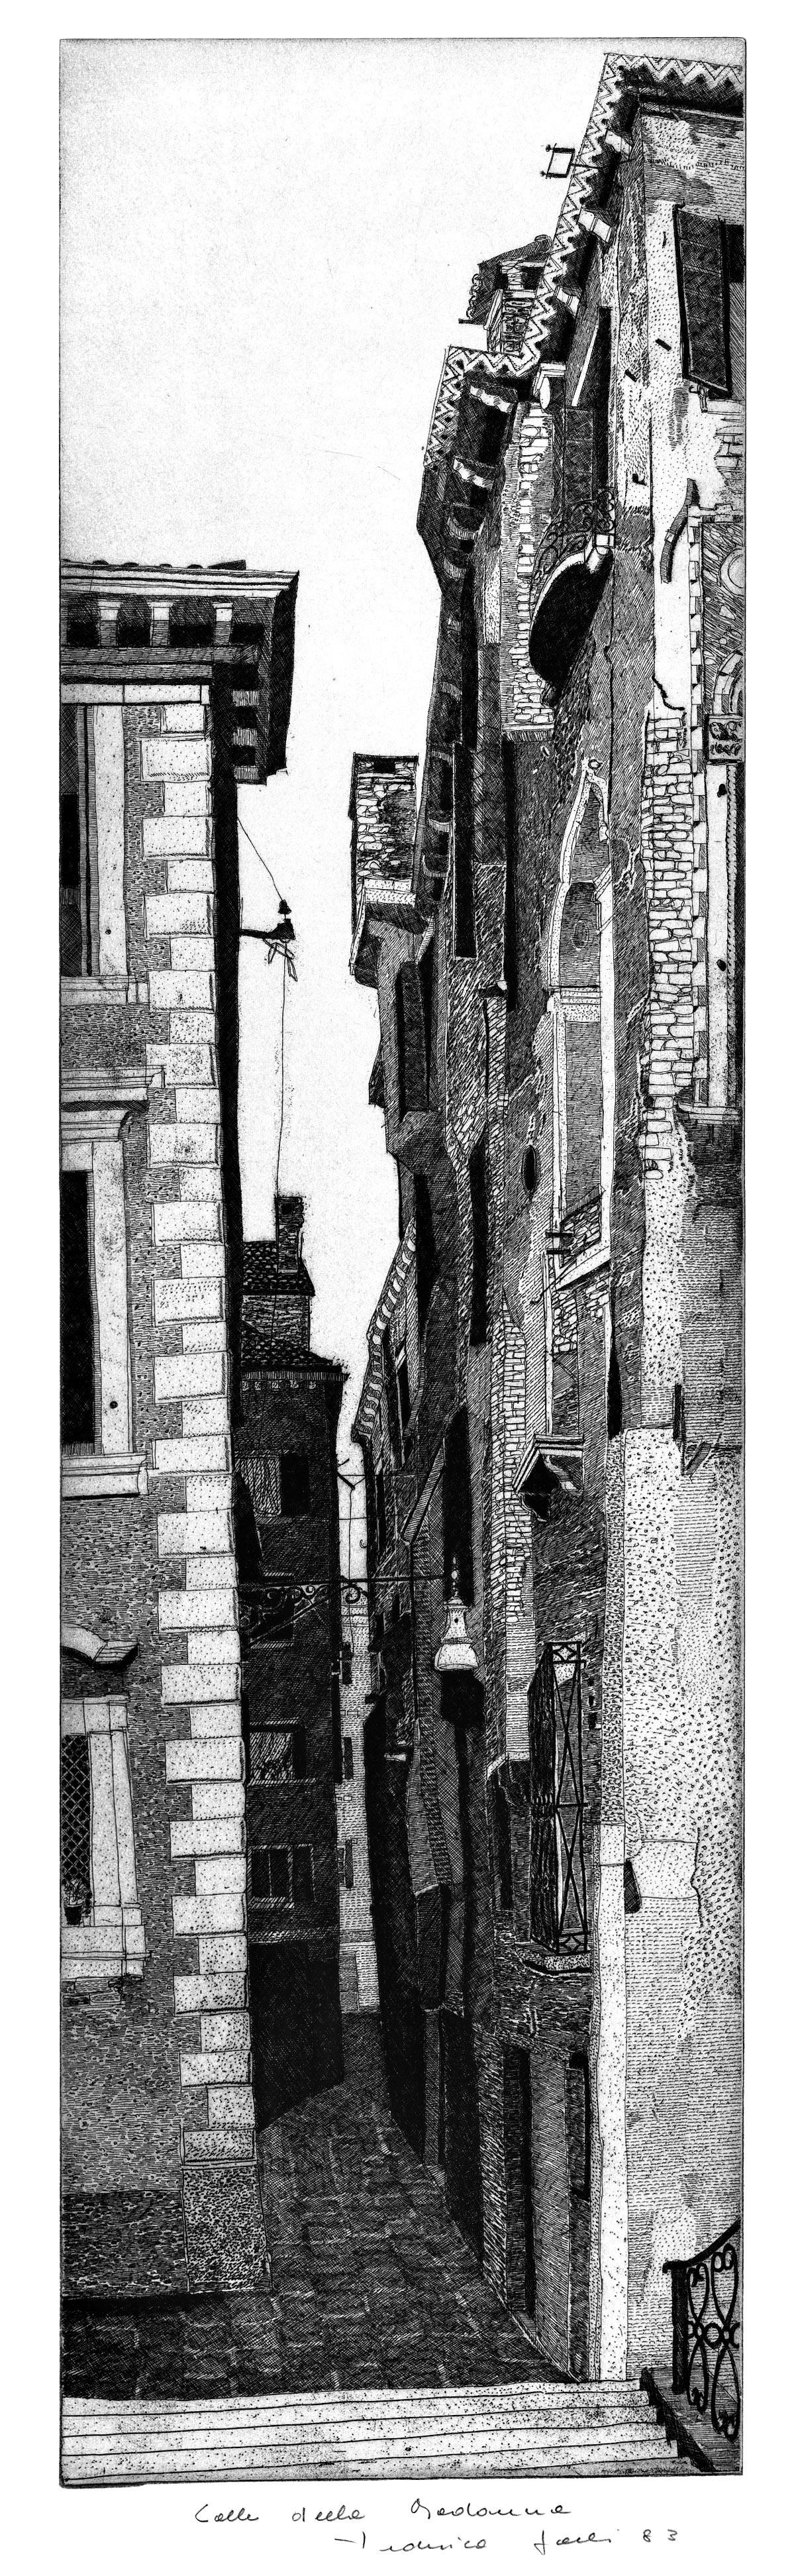 Landscape Print Federica Galli - Paysage d'architecture typique de Venise  par le maître graveur italien